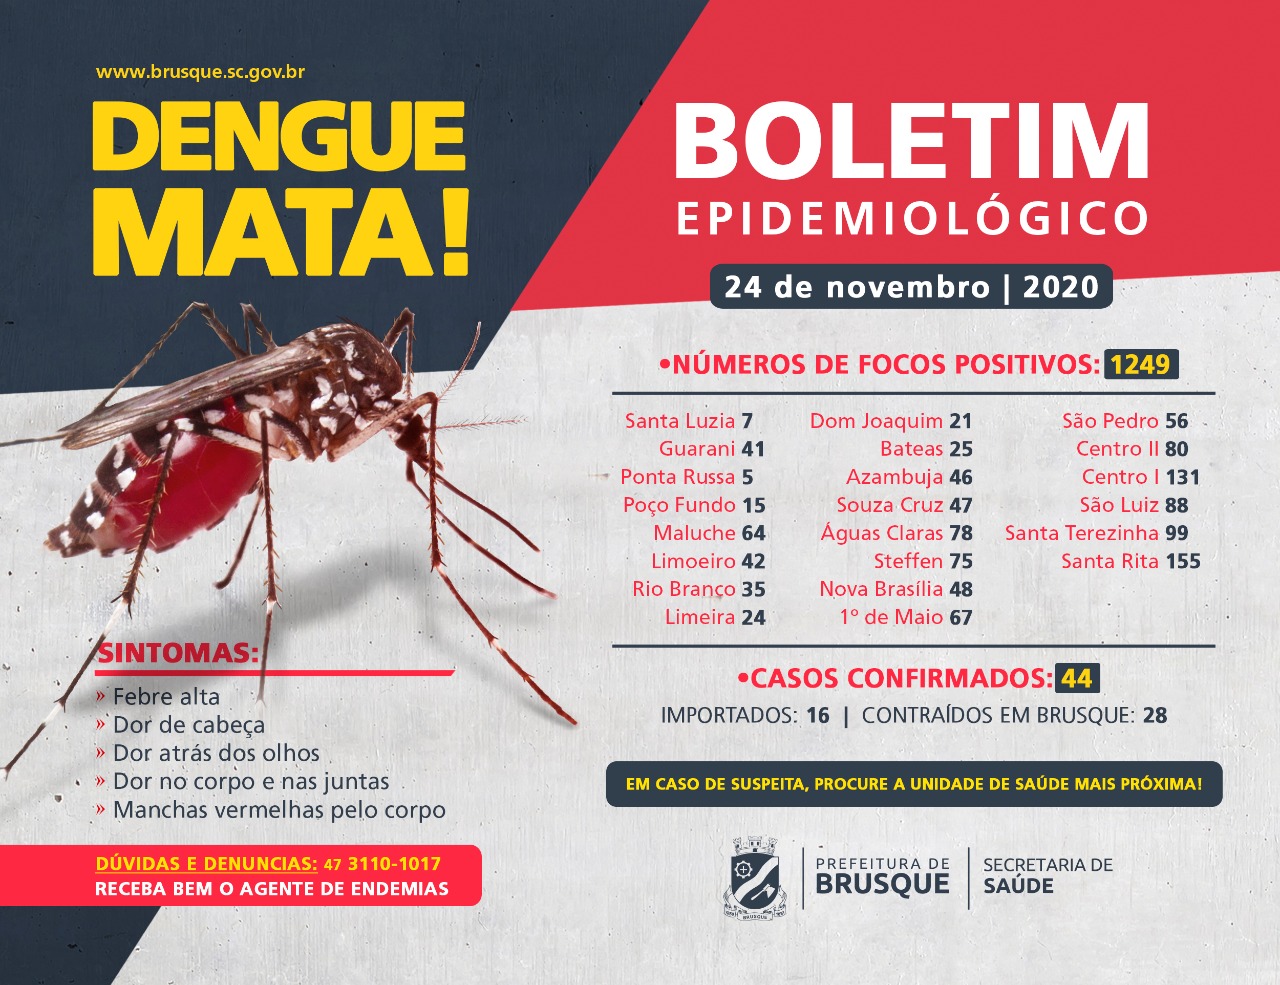 Confira o boletim epidemiológico da dengue desta terça-feira (24)